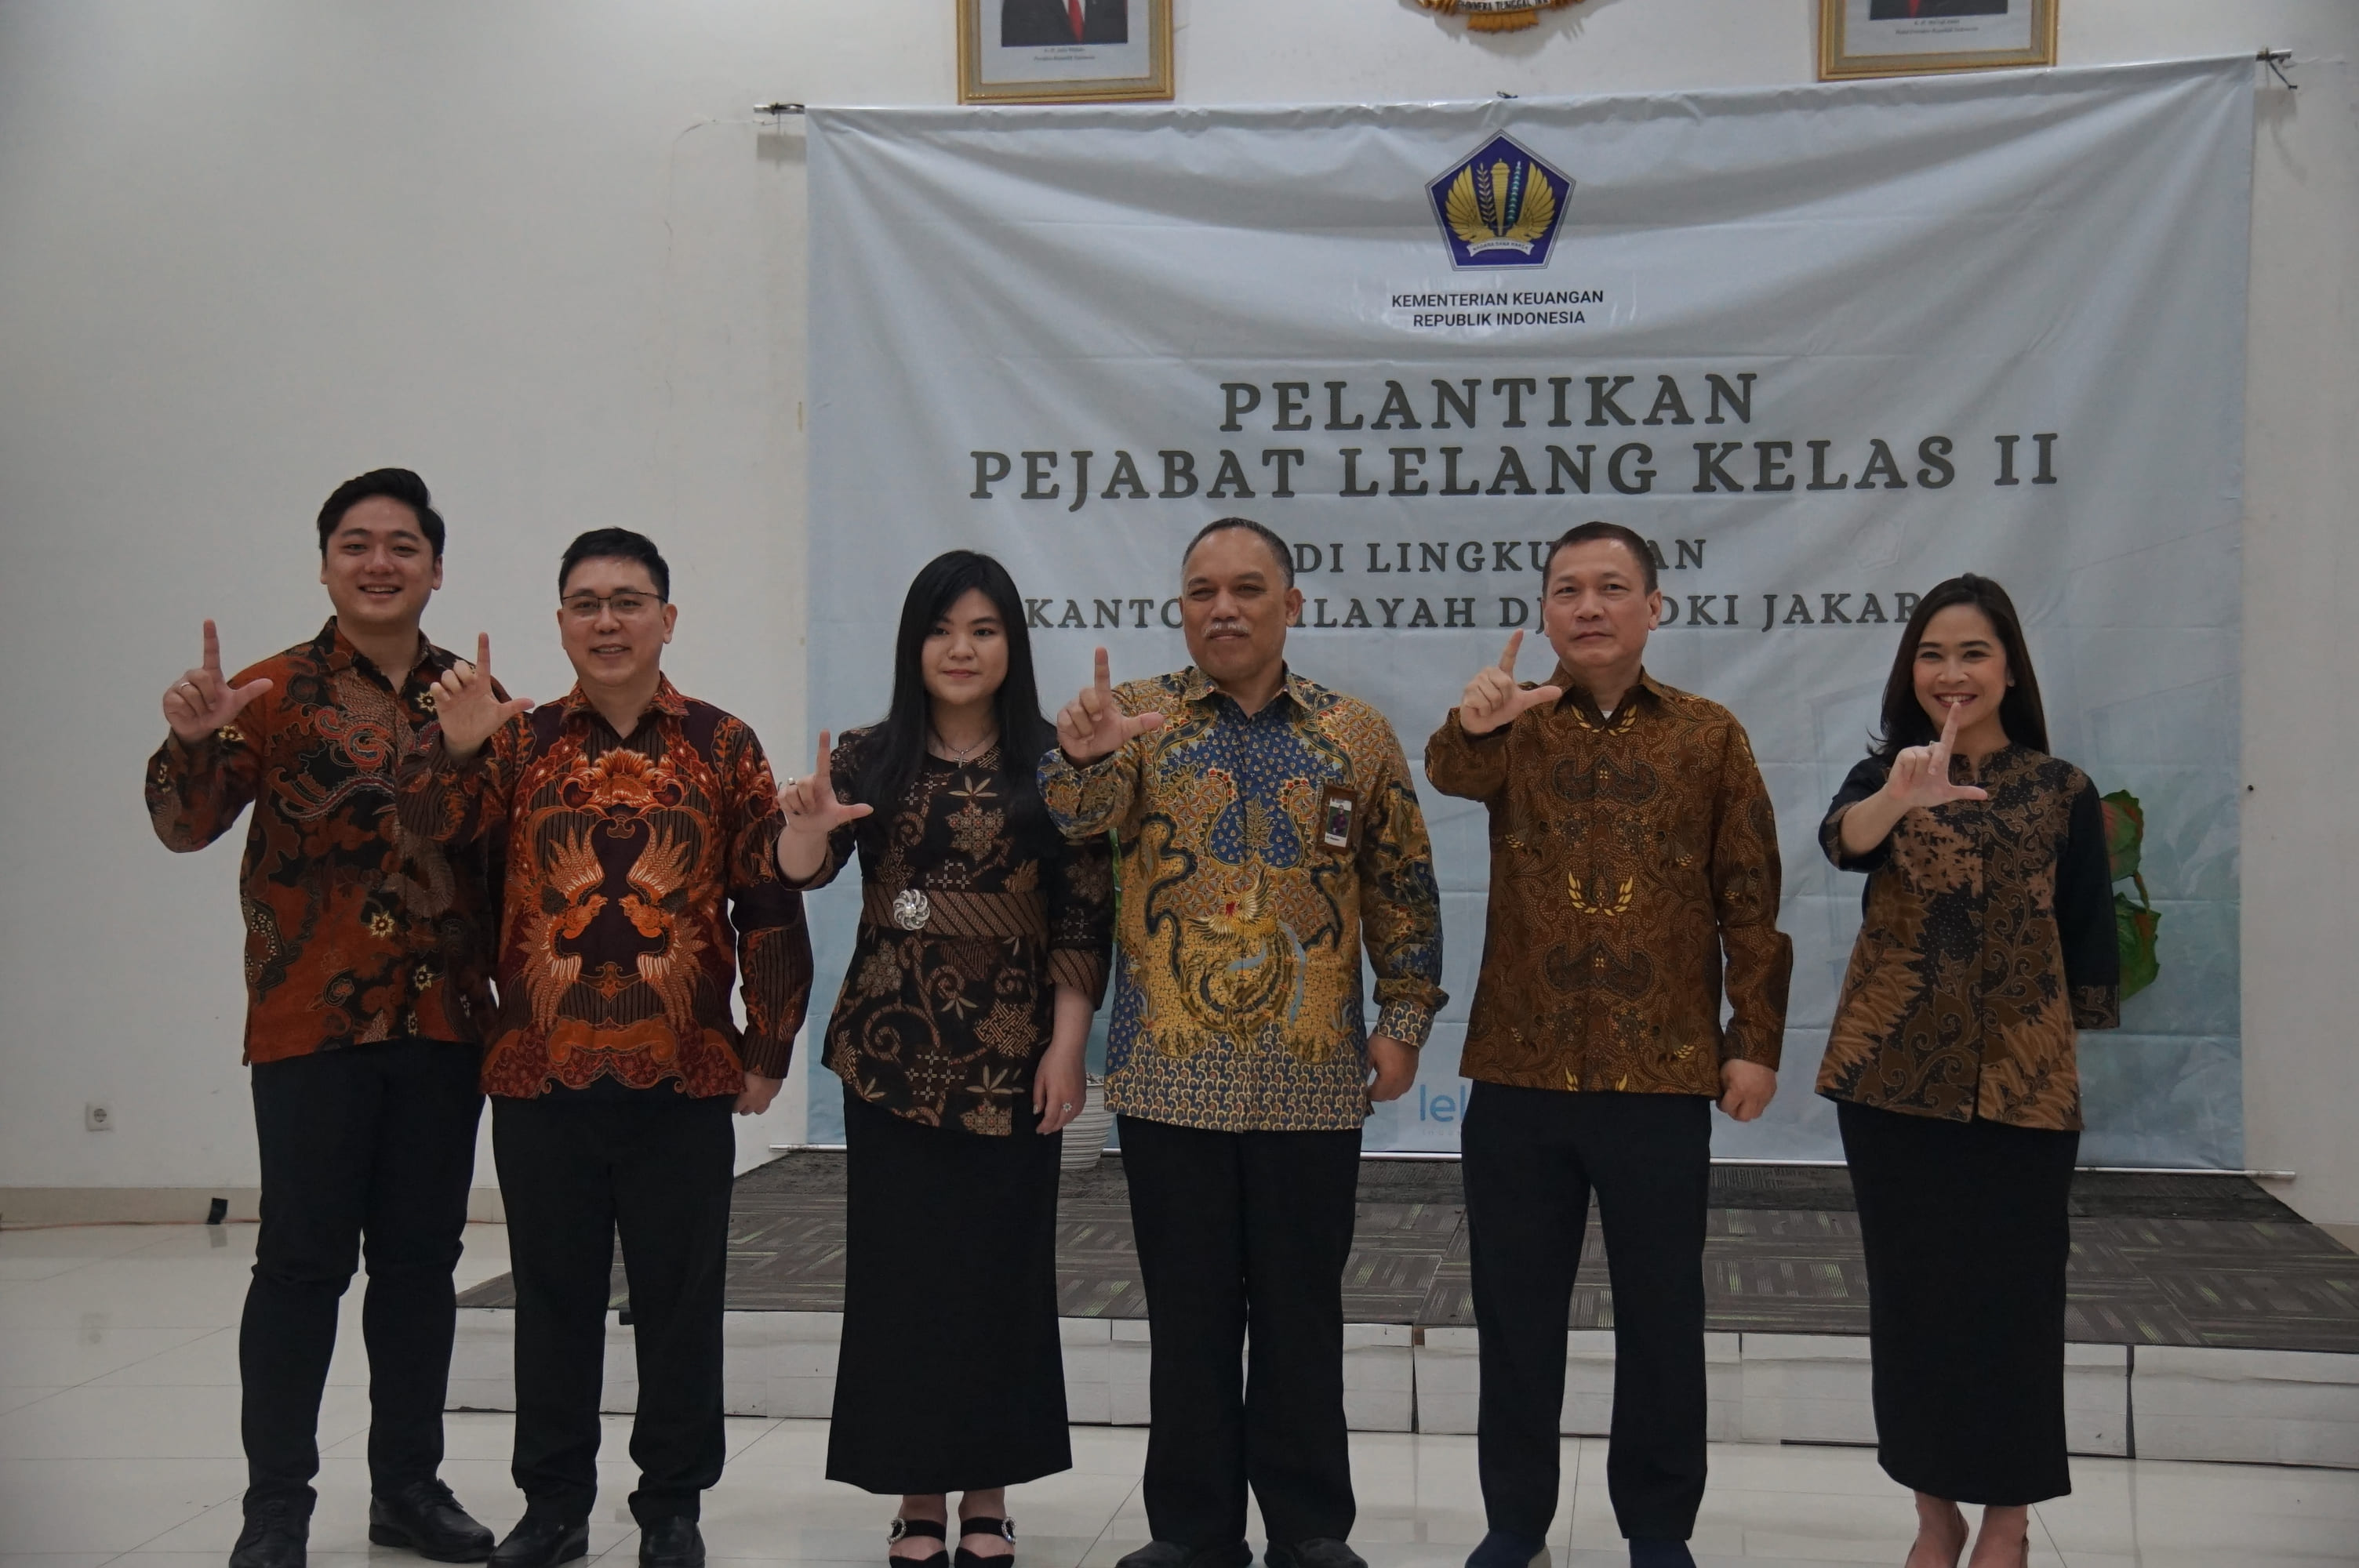 Pelantikan dan Pengambilan Sumpah Pejabat Lelang Kelas II pada Kanwil DJKN DKI Jakarta